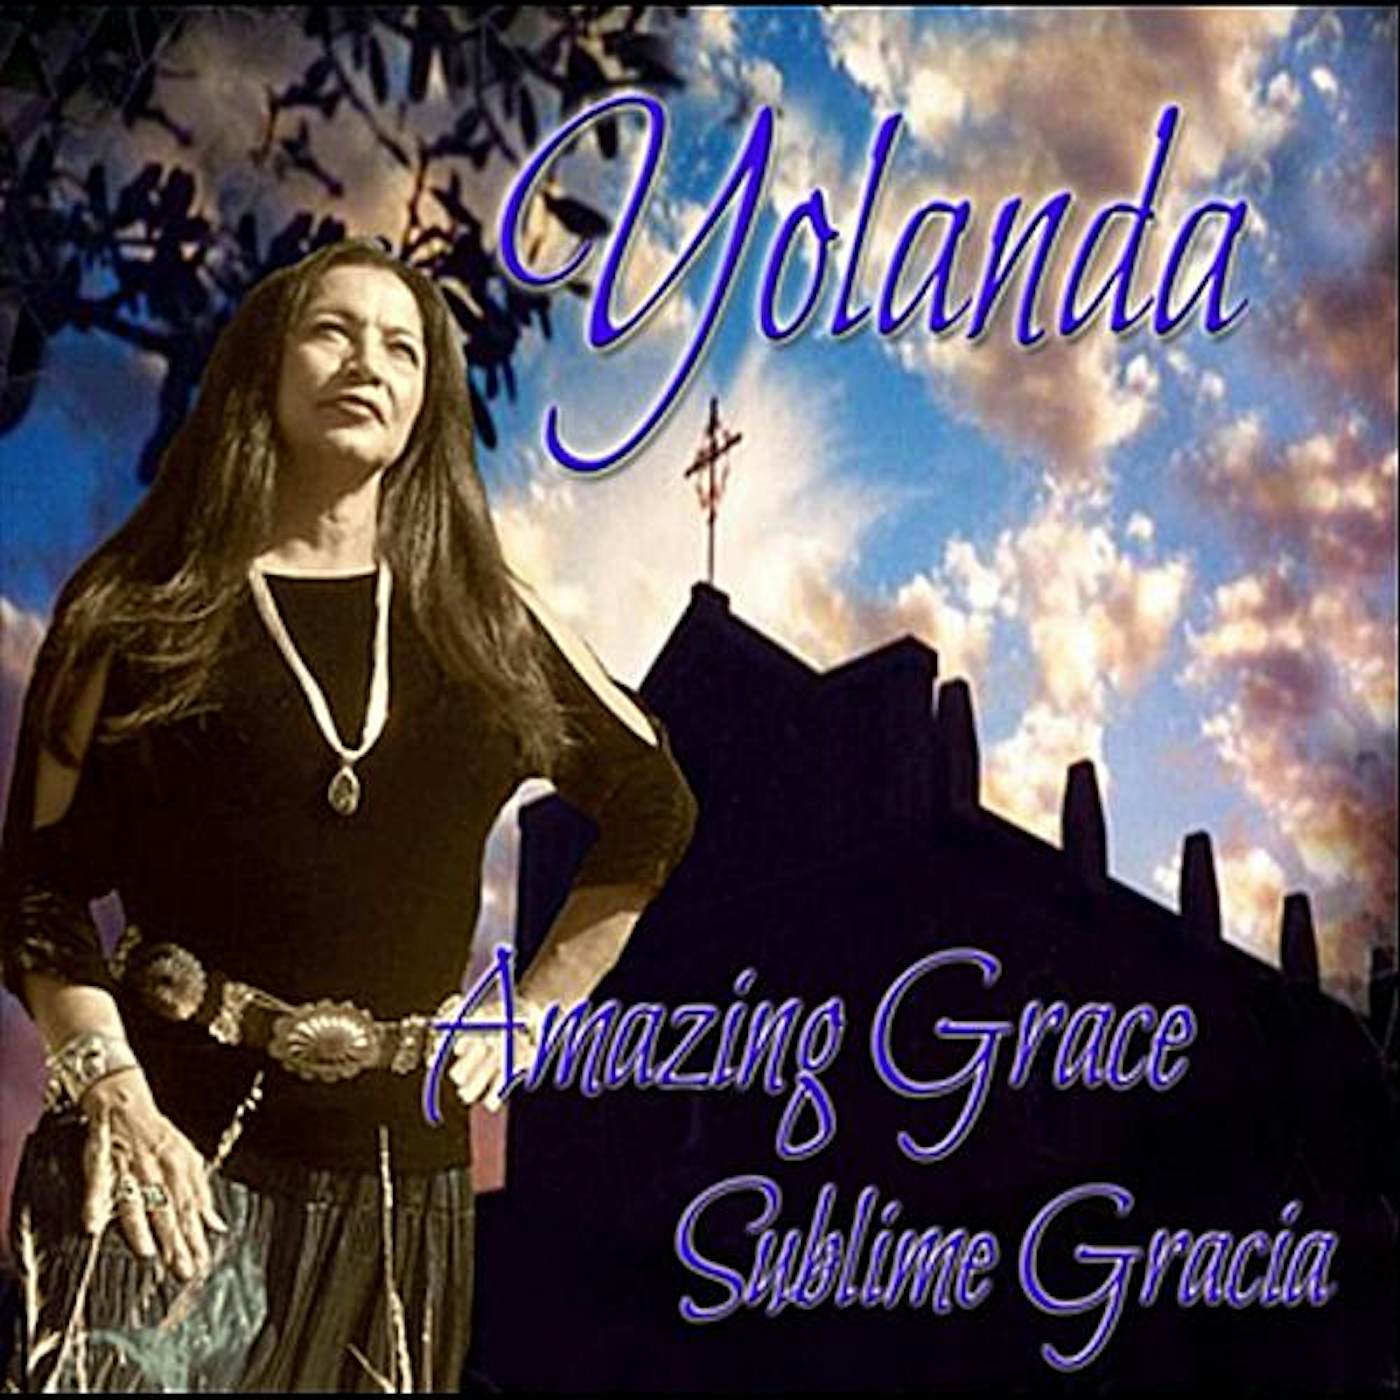 Yolanda Martinez AMAZING GRACE/SUBLIME GRACIA CD